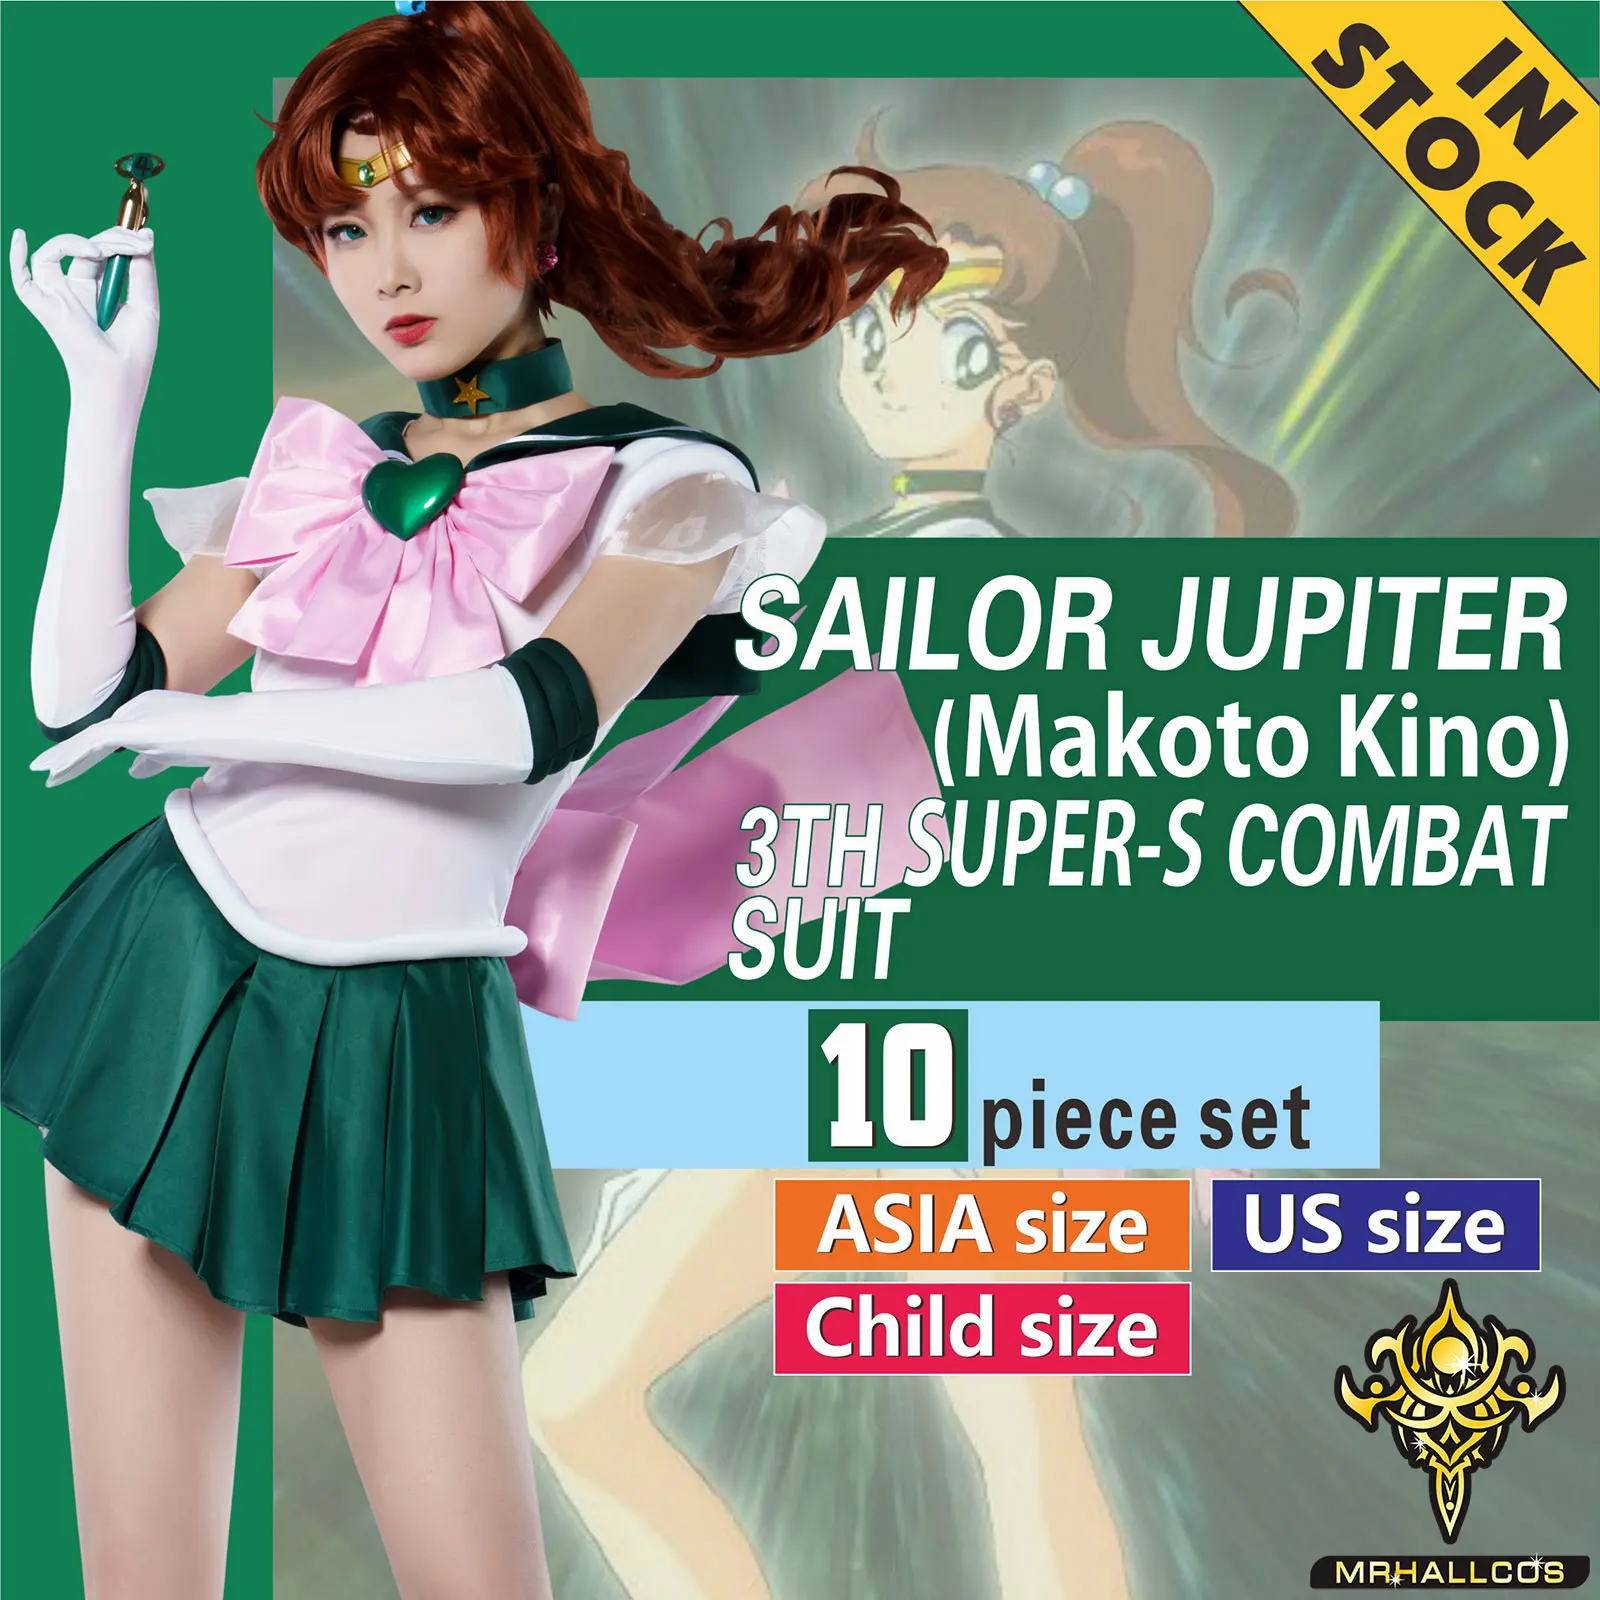 MRHALLCOS Anime Cosplay żeglarz Jupiter Makoto Kino księżycowy kostium kostium impreza z okazji Halloween dziecka dorosłych kobiet pluu